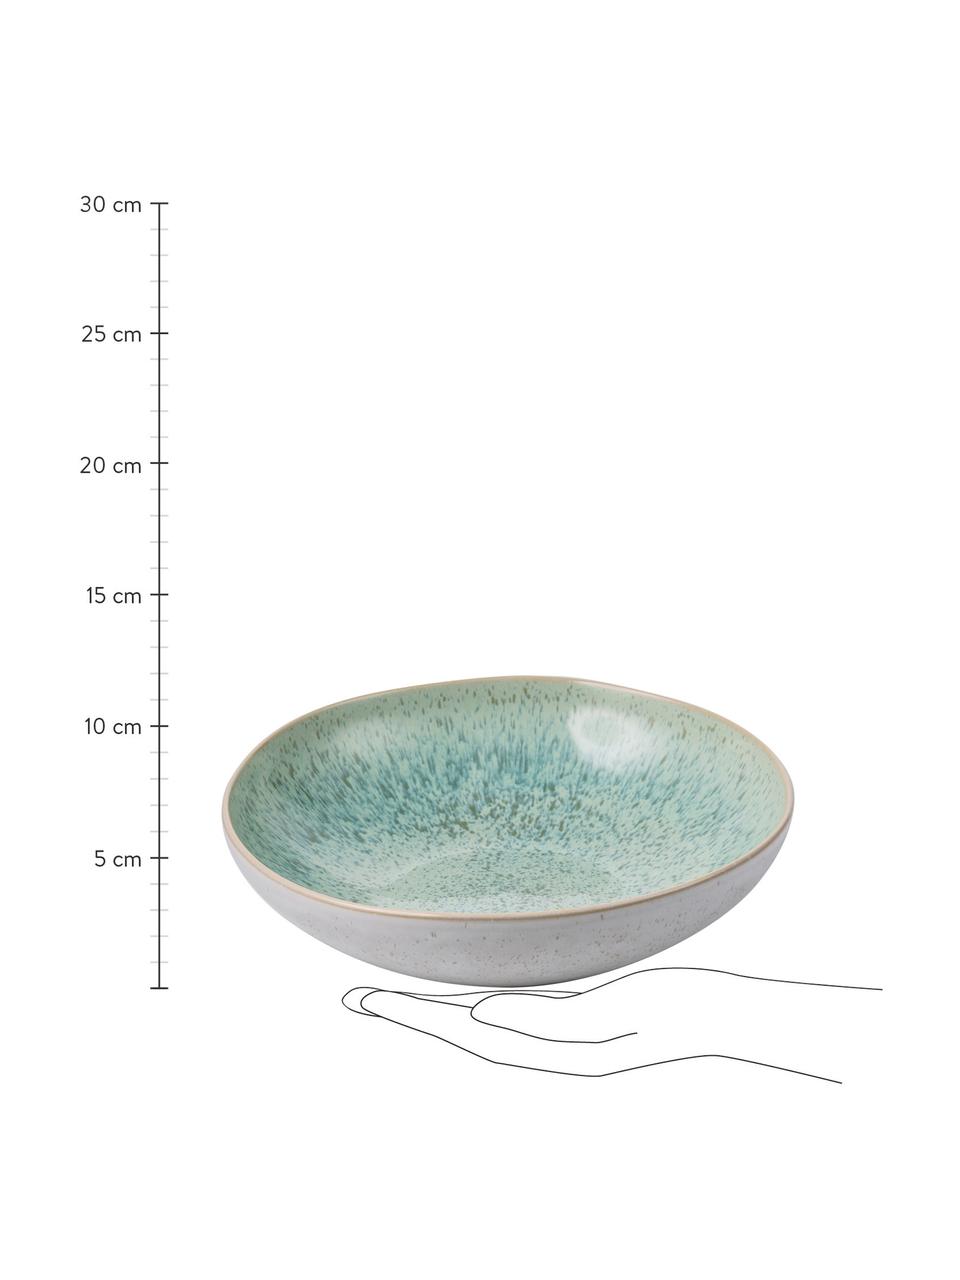 Handbeschilderde serveerschaal Areia met reactief glazuur, Ø 22 cm, Keramiek, Mintkleurig, gebroken wit, beige, Ø 22 x H 5 cm